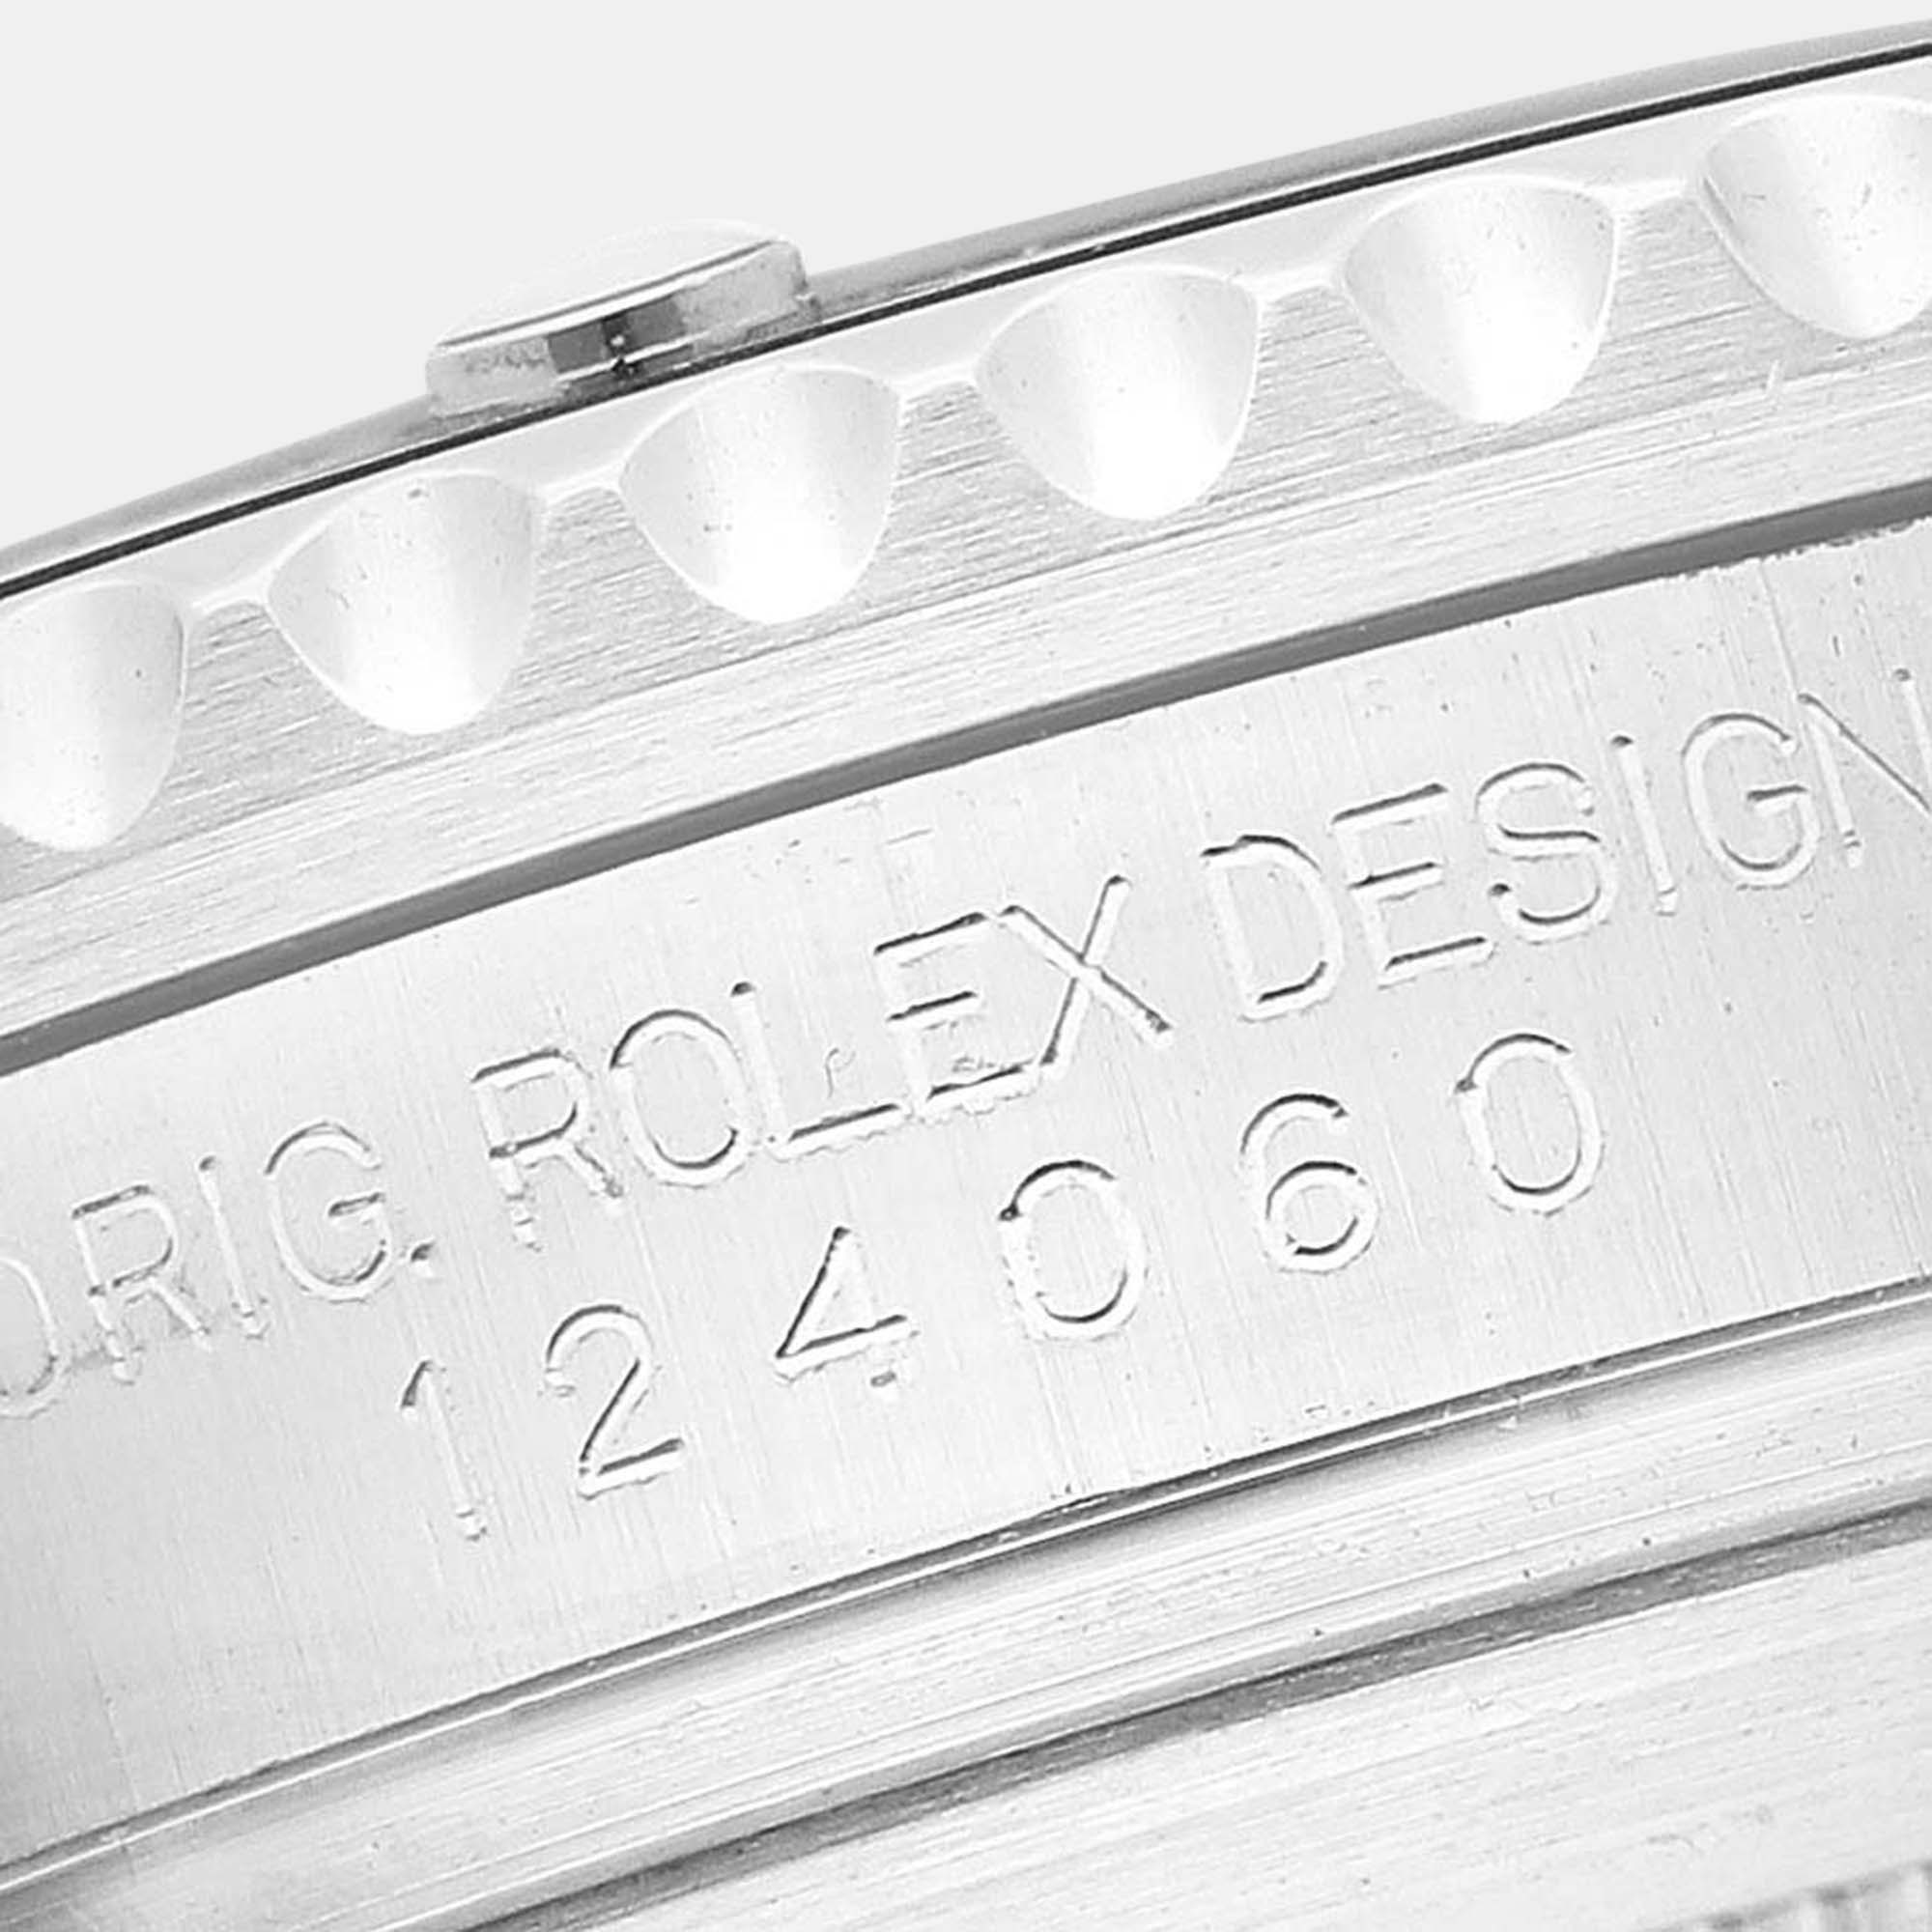 Rolex Submariner Non-Date Ceramic Bezel Steel Mens Watch 124060 41 Mm